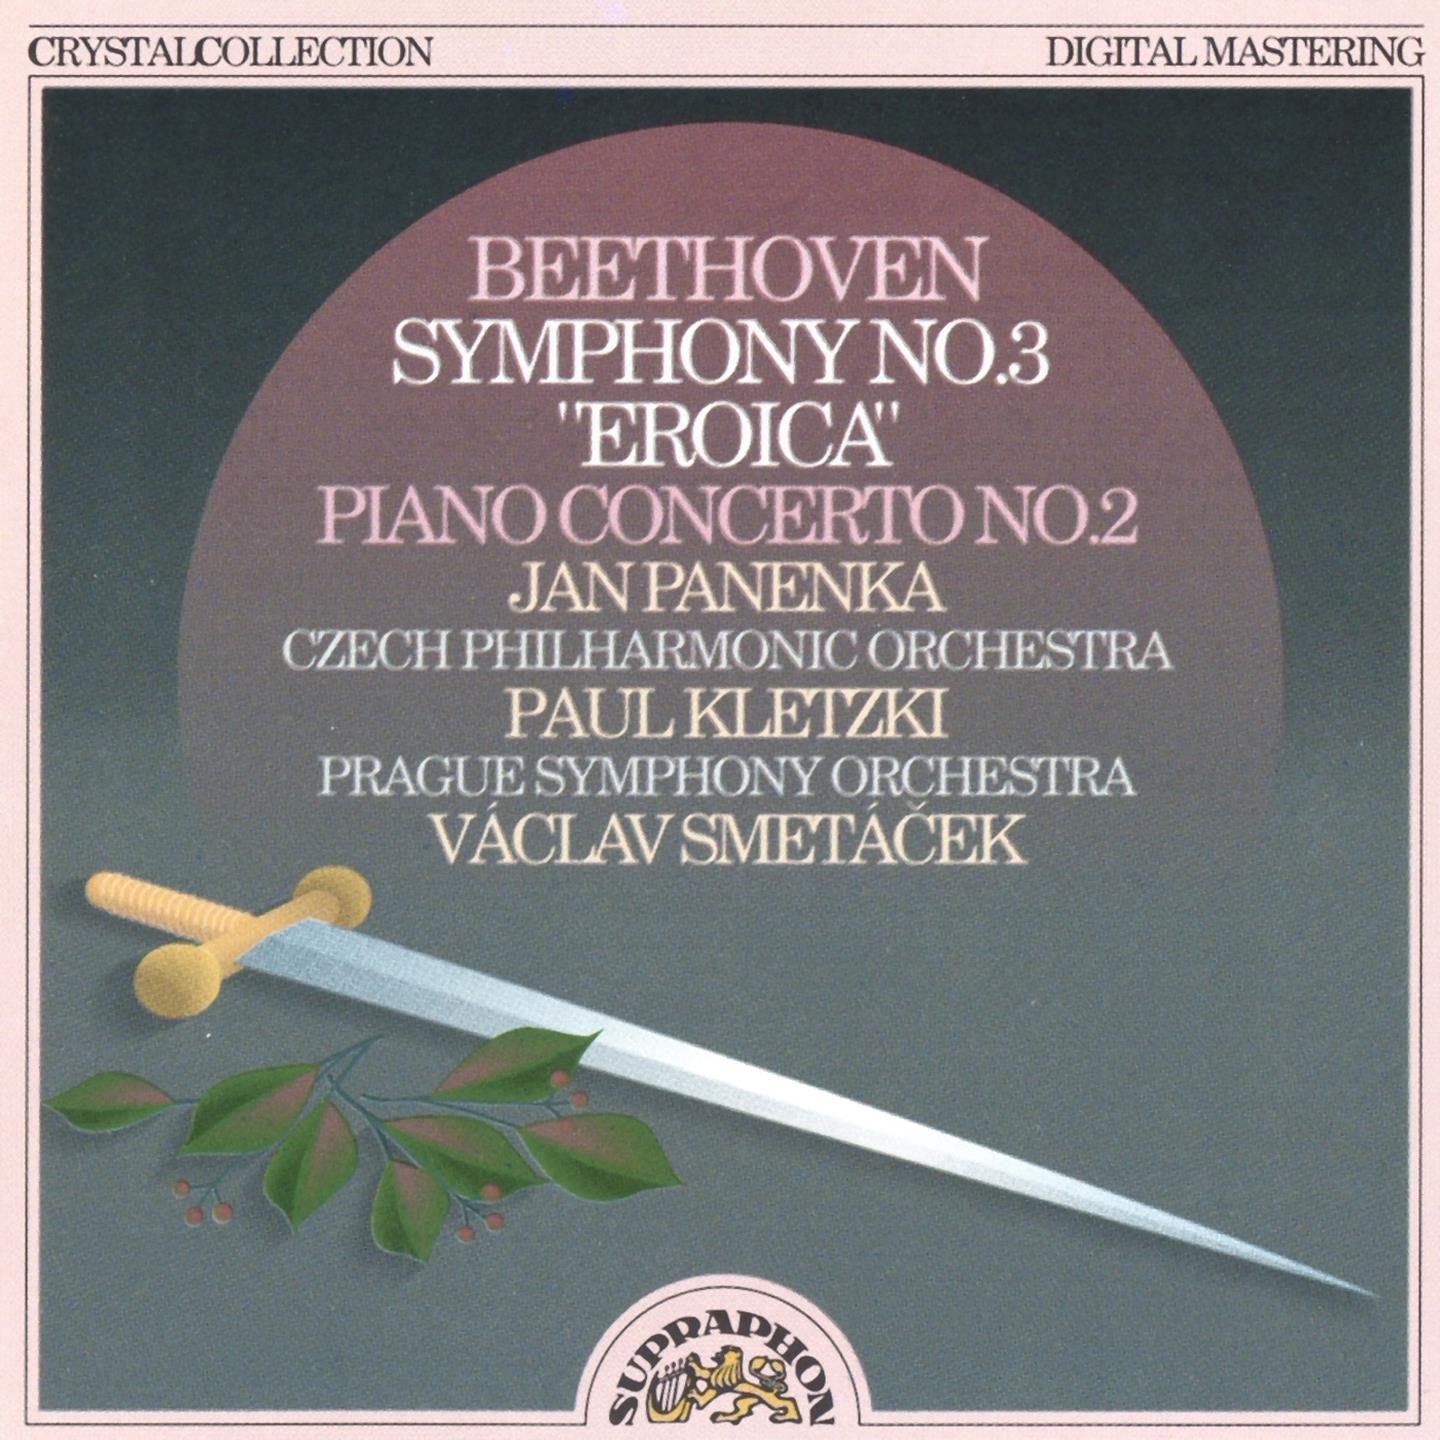 Piano Concerto No. 2 in B-Flat Major, Op. 19, .: III. Rondo. Molto allegro